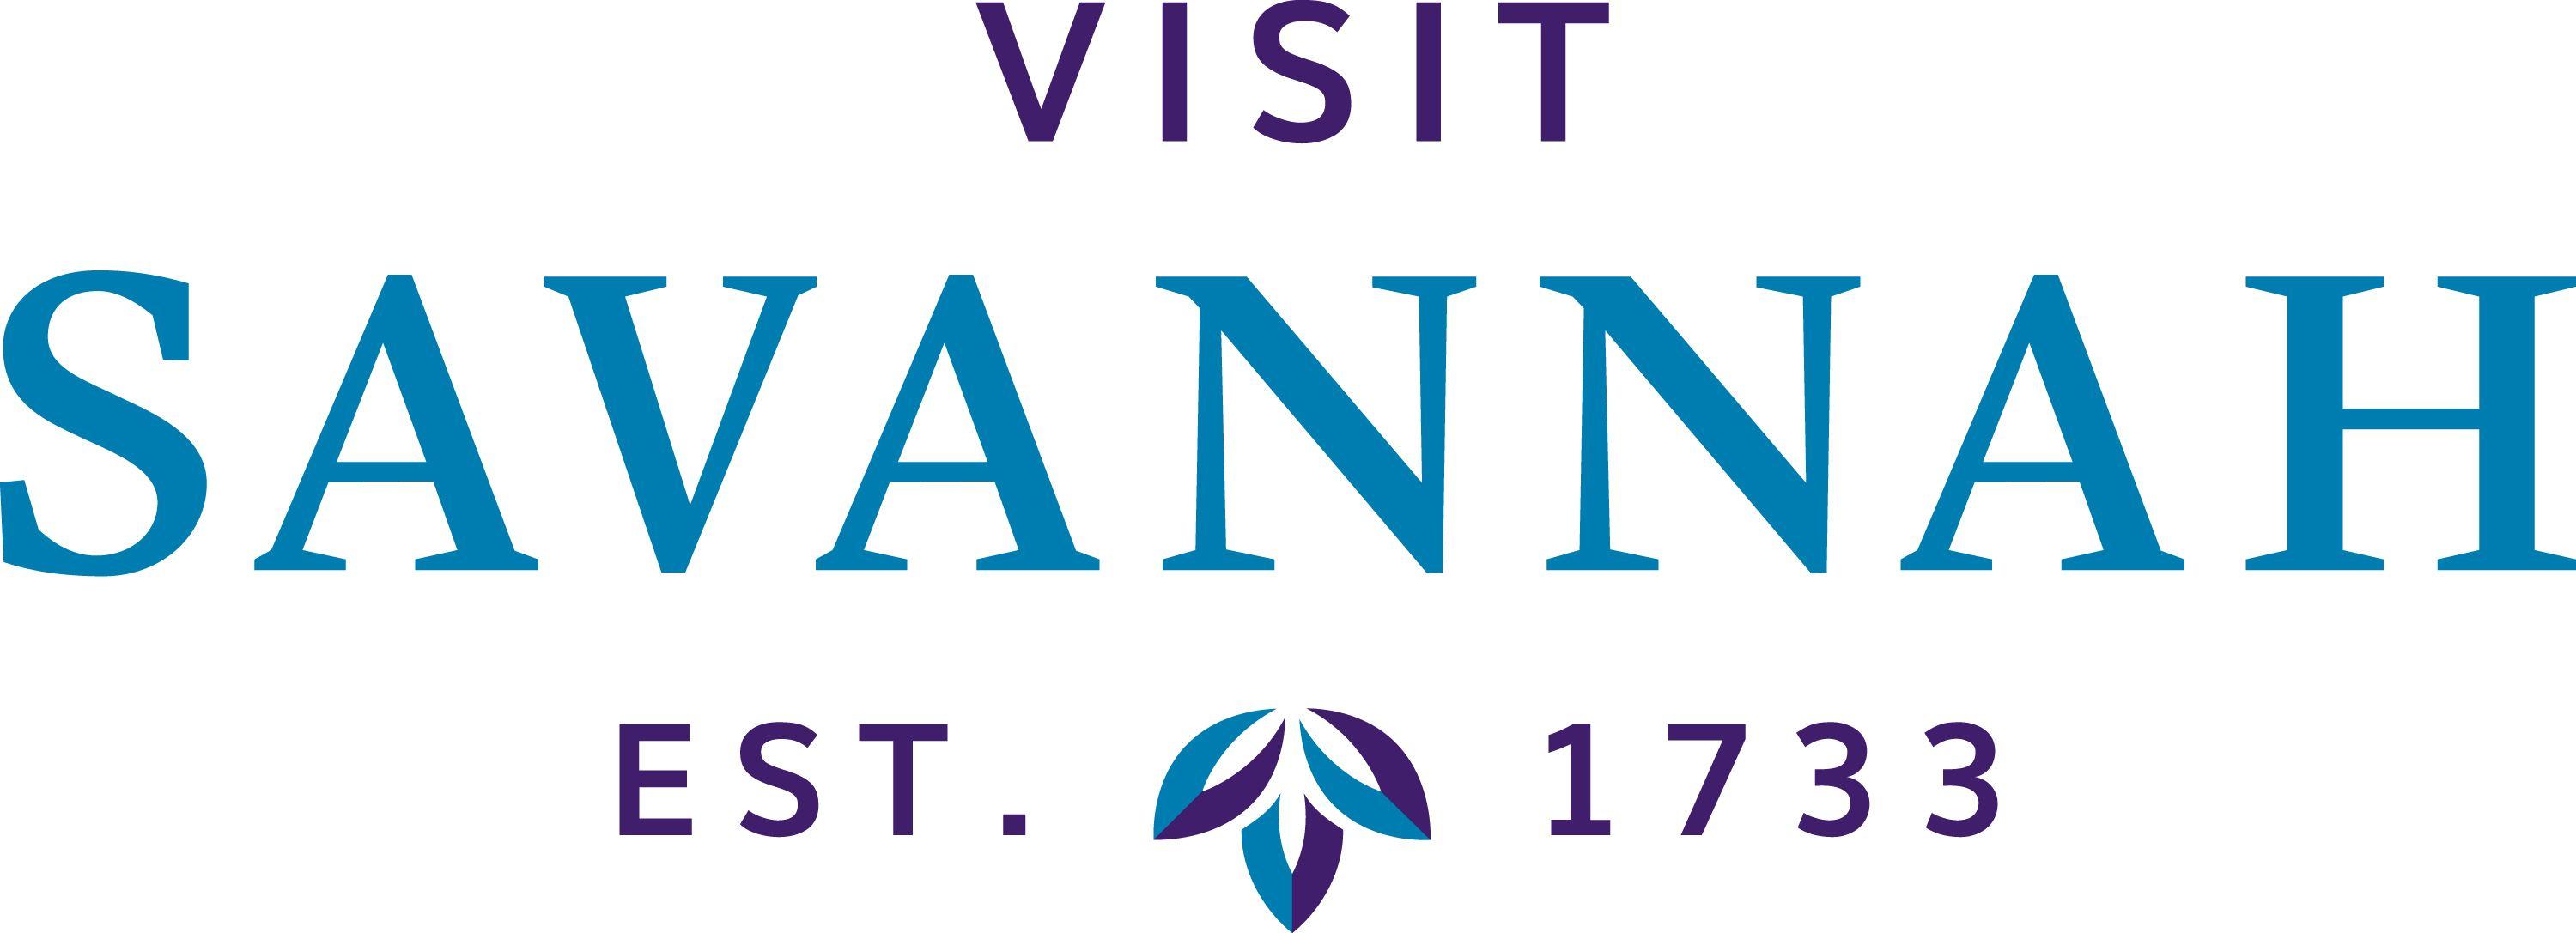 Savannah Logo - Savannah, GA CVB Sales Staff